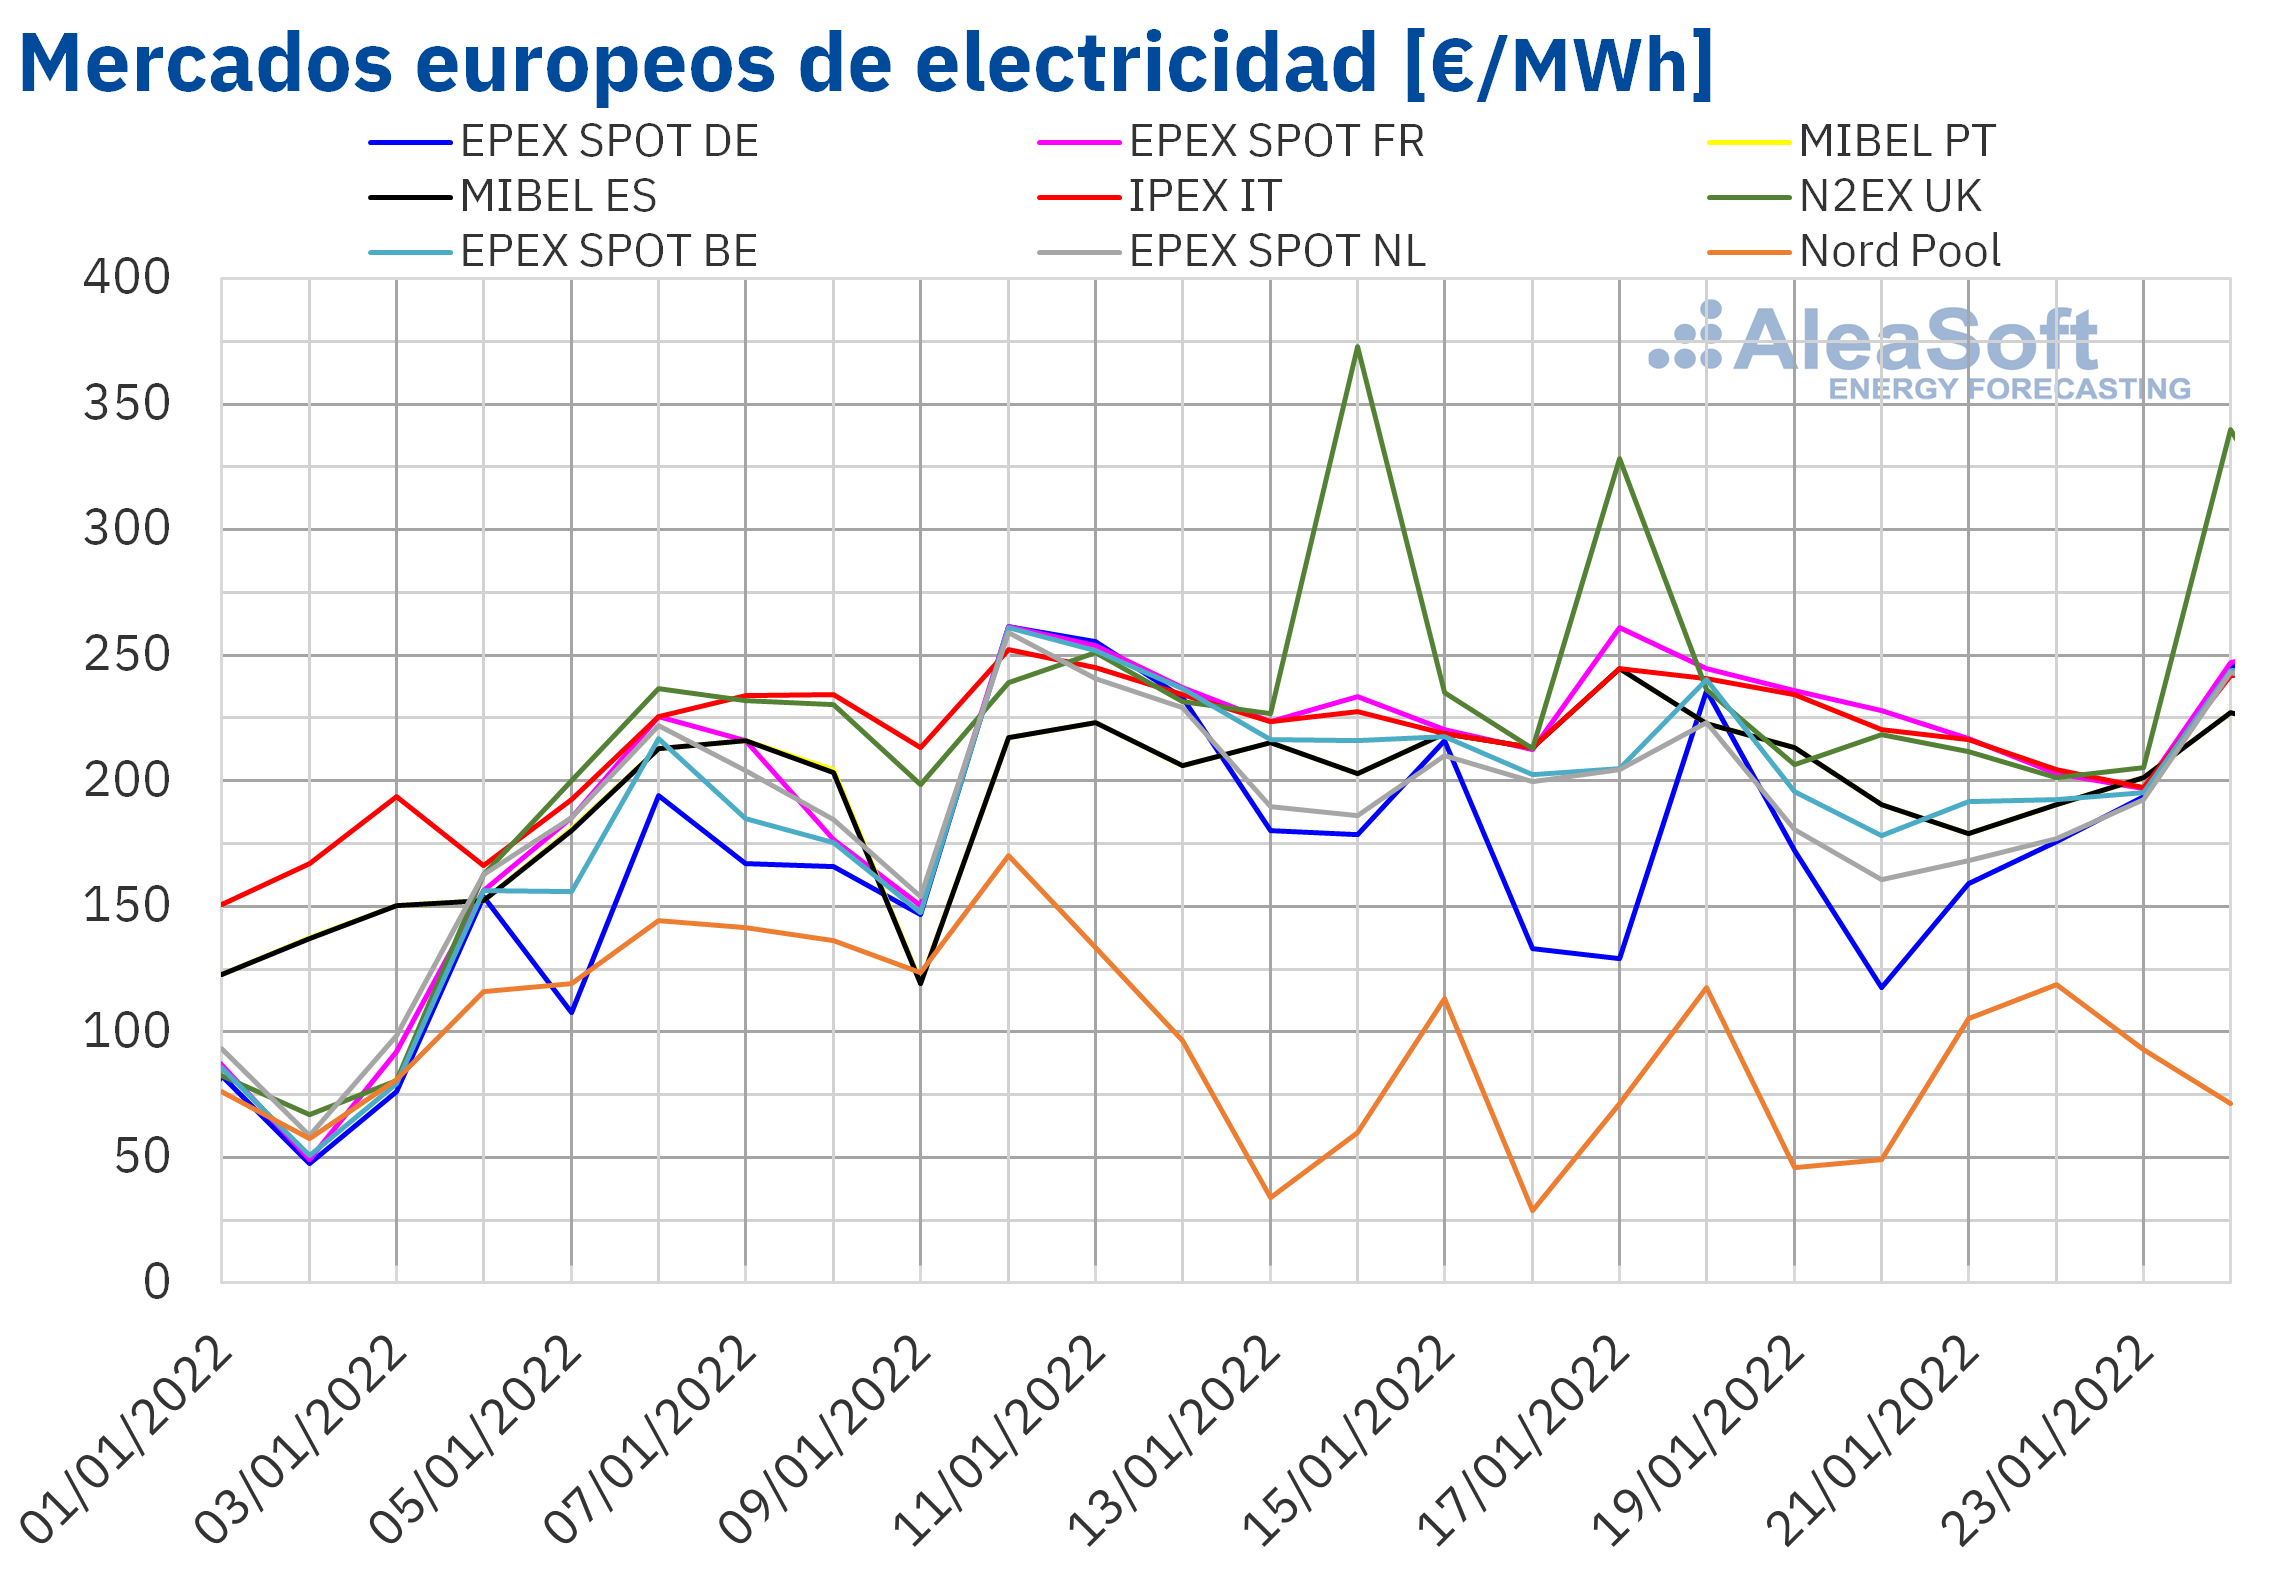 AleaSoft: Los precios de los mercados eléctricos europeos se dan un respiro en la tercera semana de enero